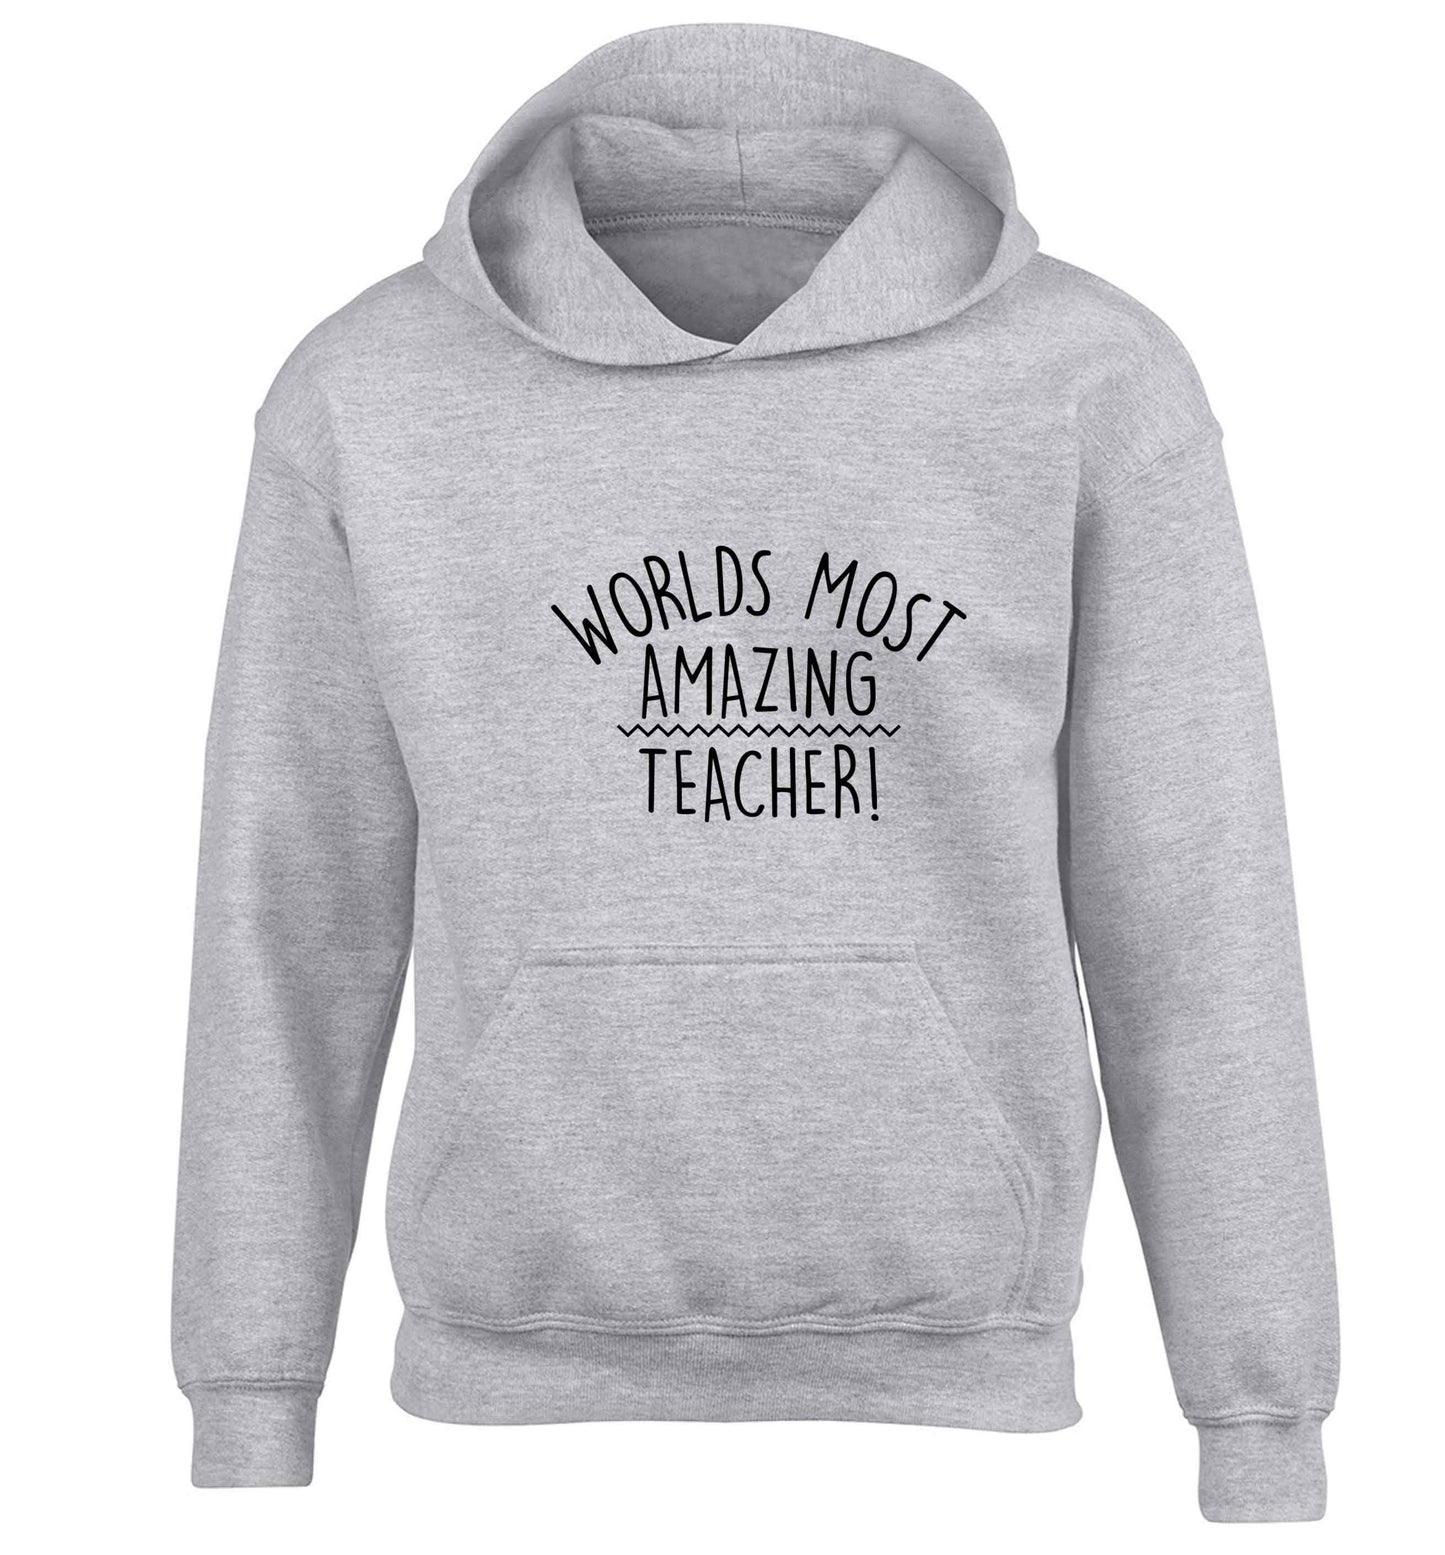 Worlds most amazing teacher children's grey hoodie 12-13 Years